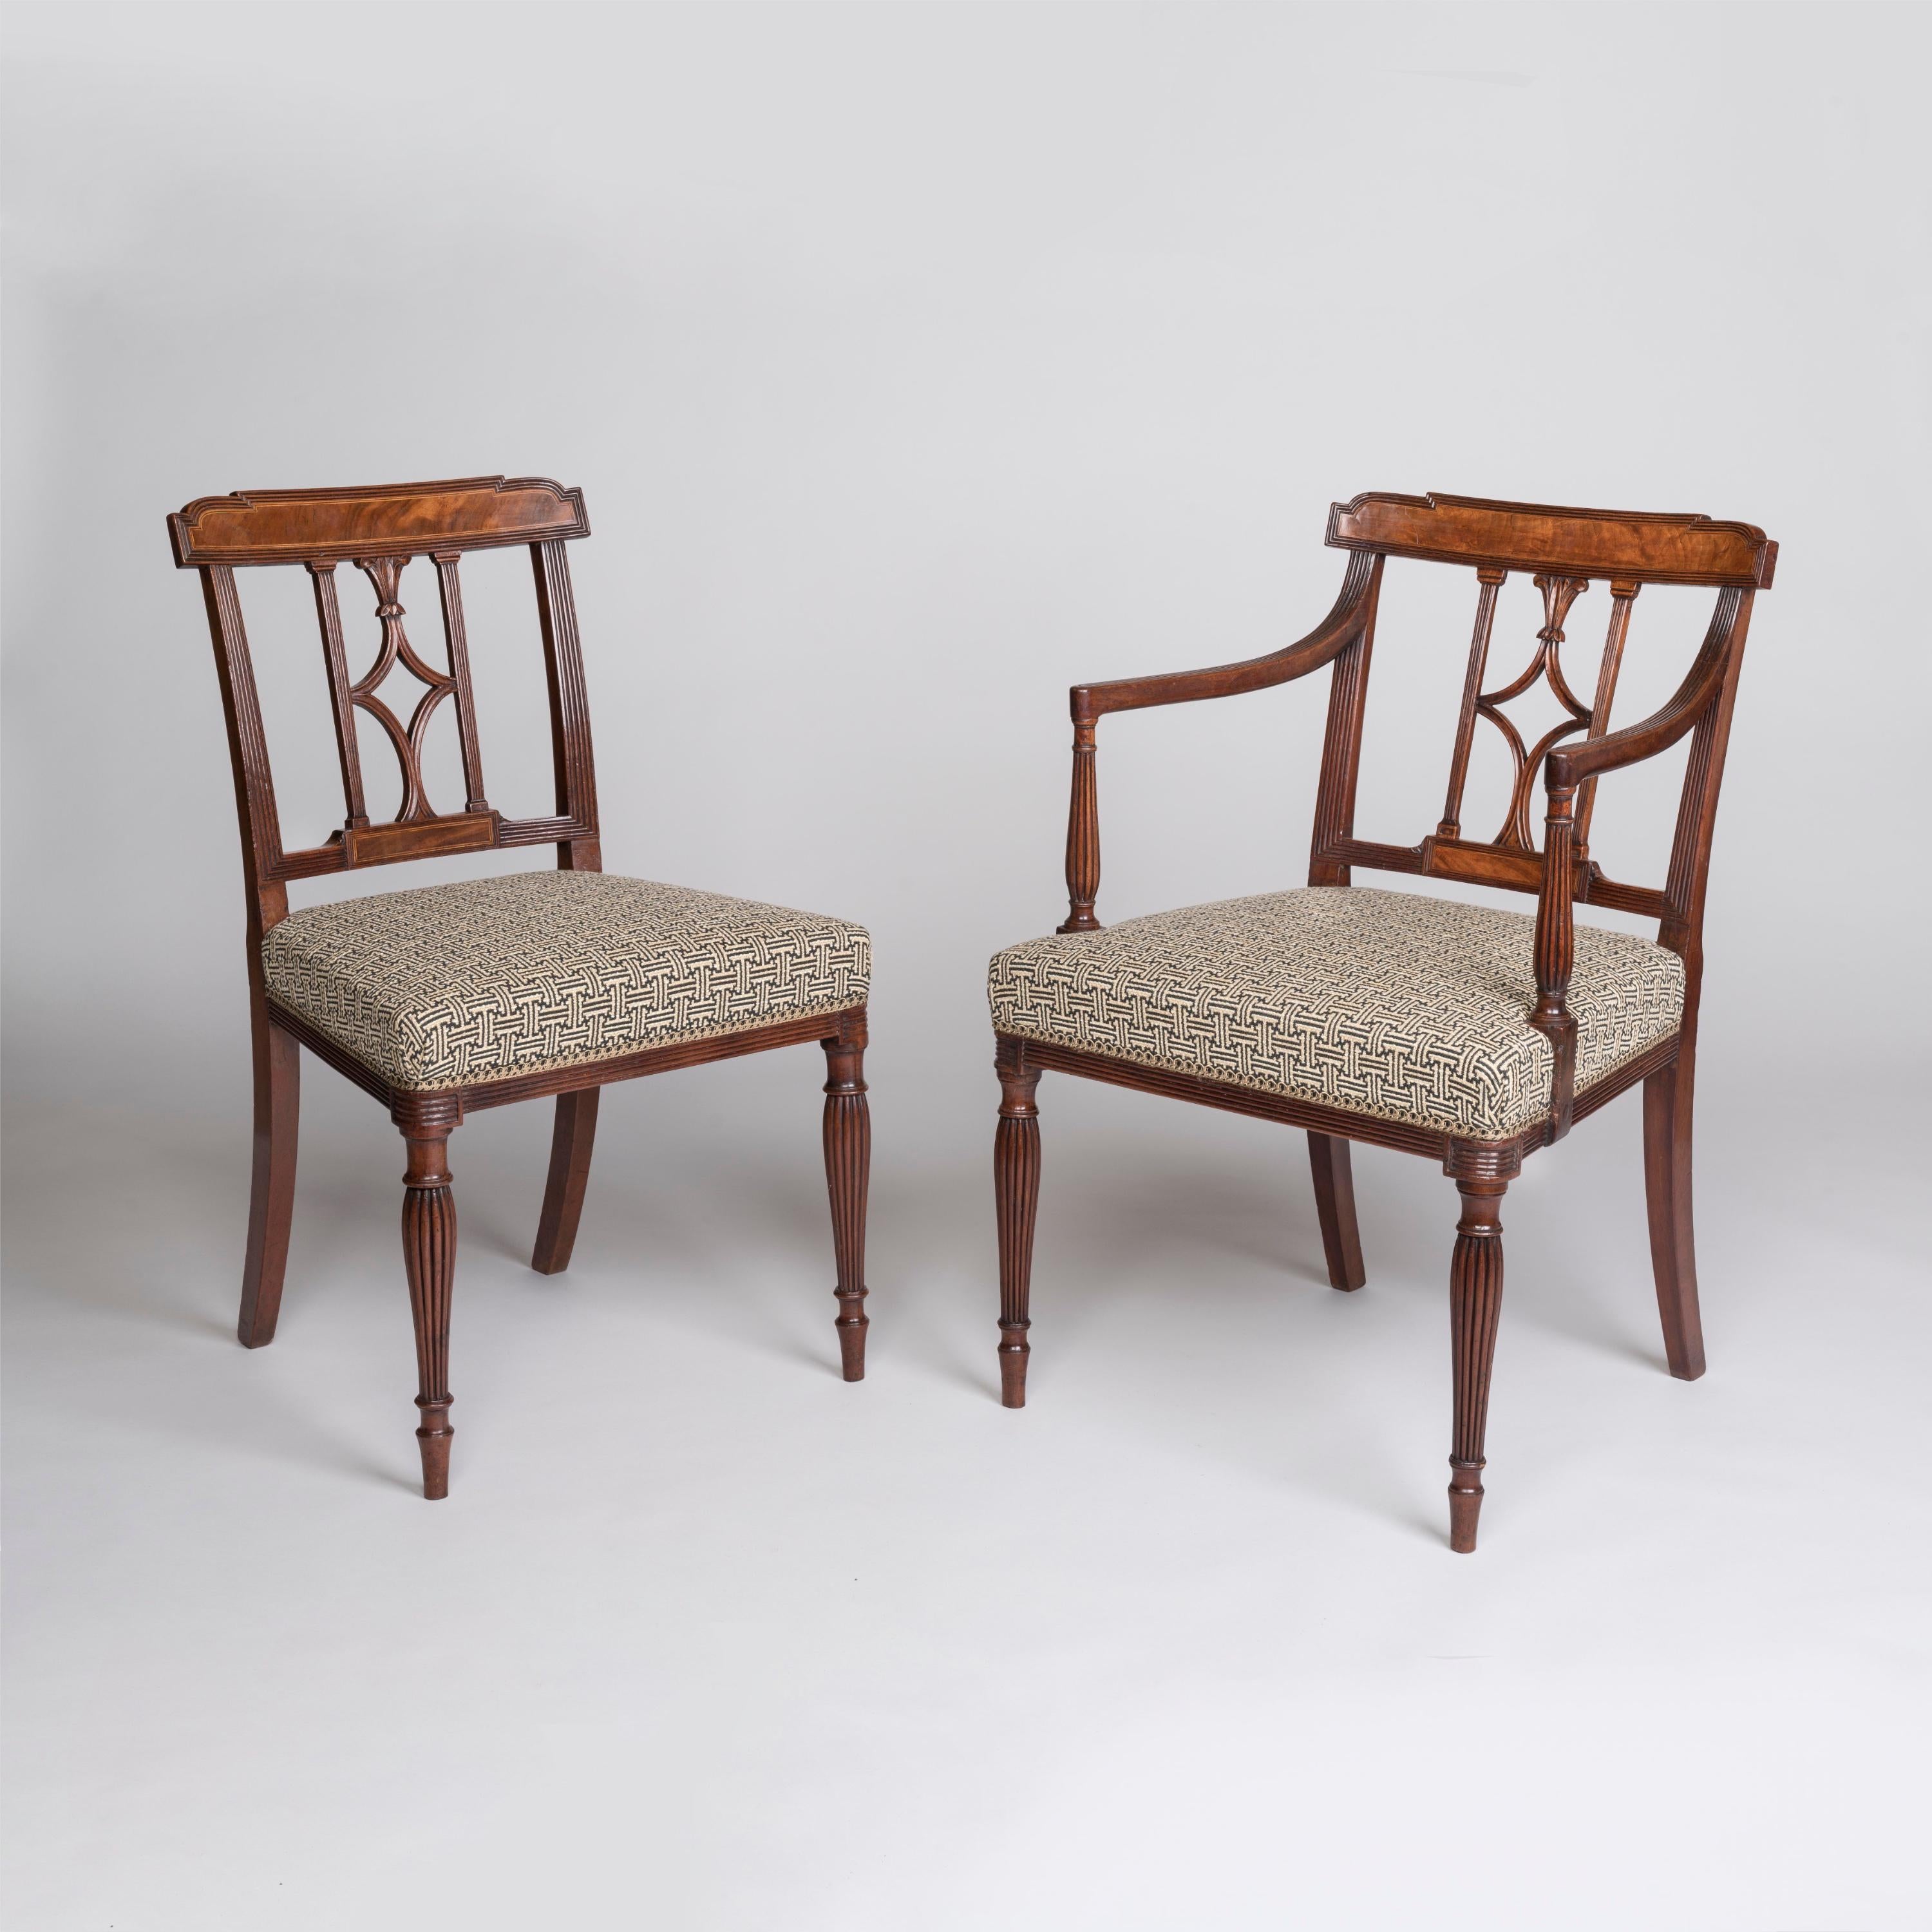 Ein feiner Satz von zwölf Mahagoni-Esszimmerstühlen aus der Zeit von Georg III.
Nach dem Vorbild von Thomas Sheraton

Das Set besteht aus einem Paar Sesseln mit offenen Armlehnen auf balusterförmigen, gerippten Stützen, die gepolsterte Sitze